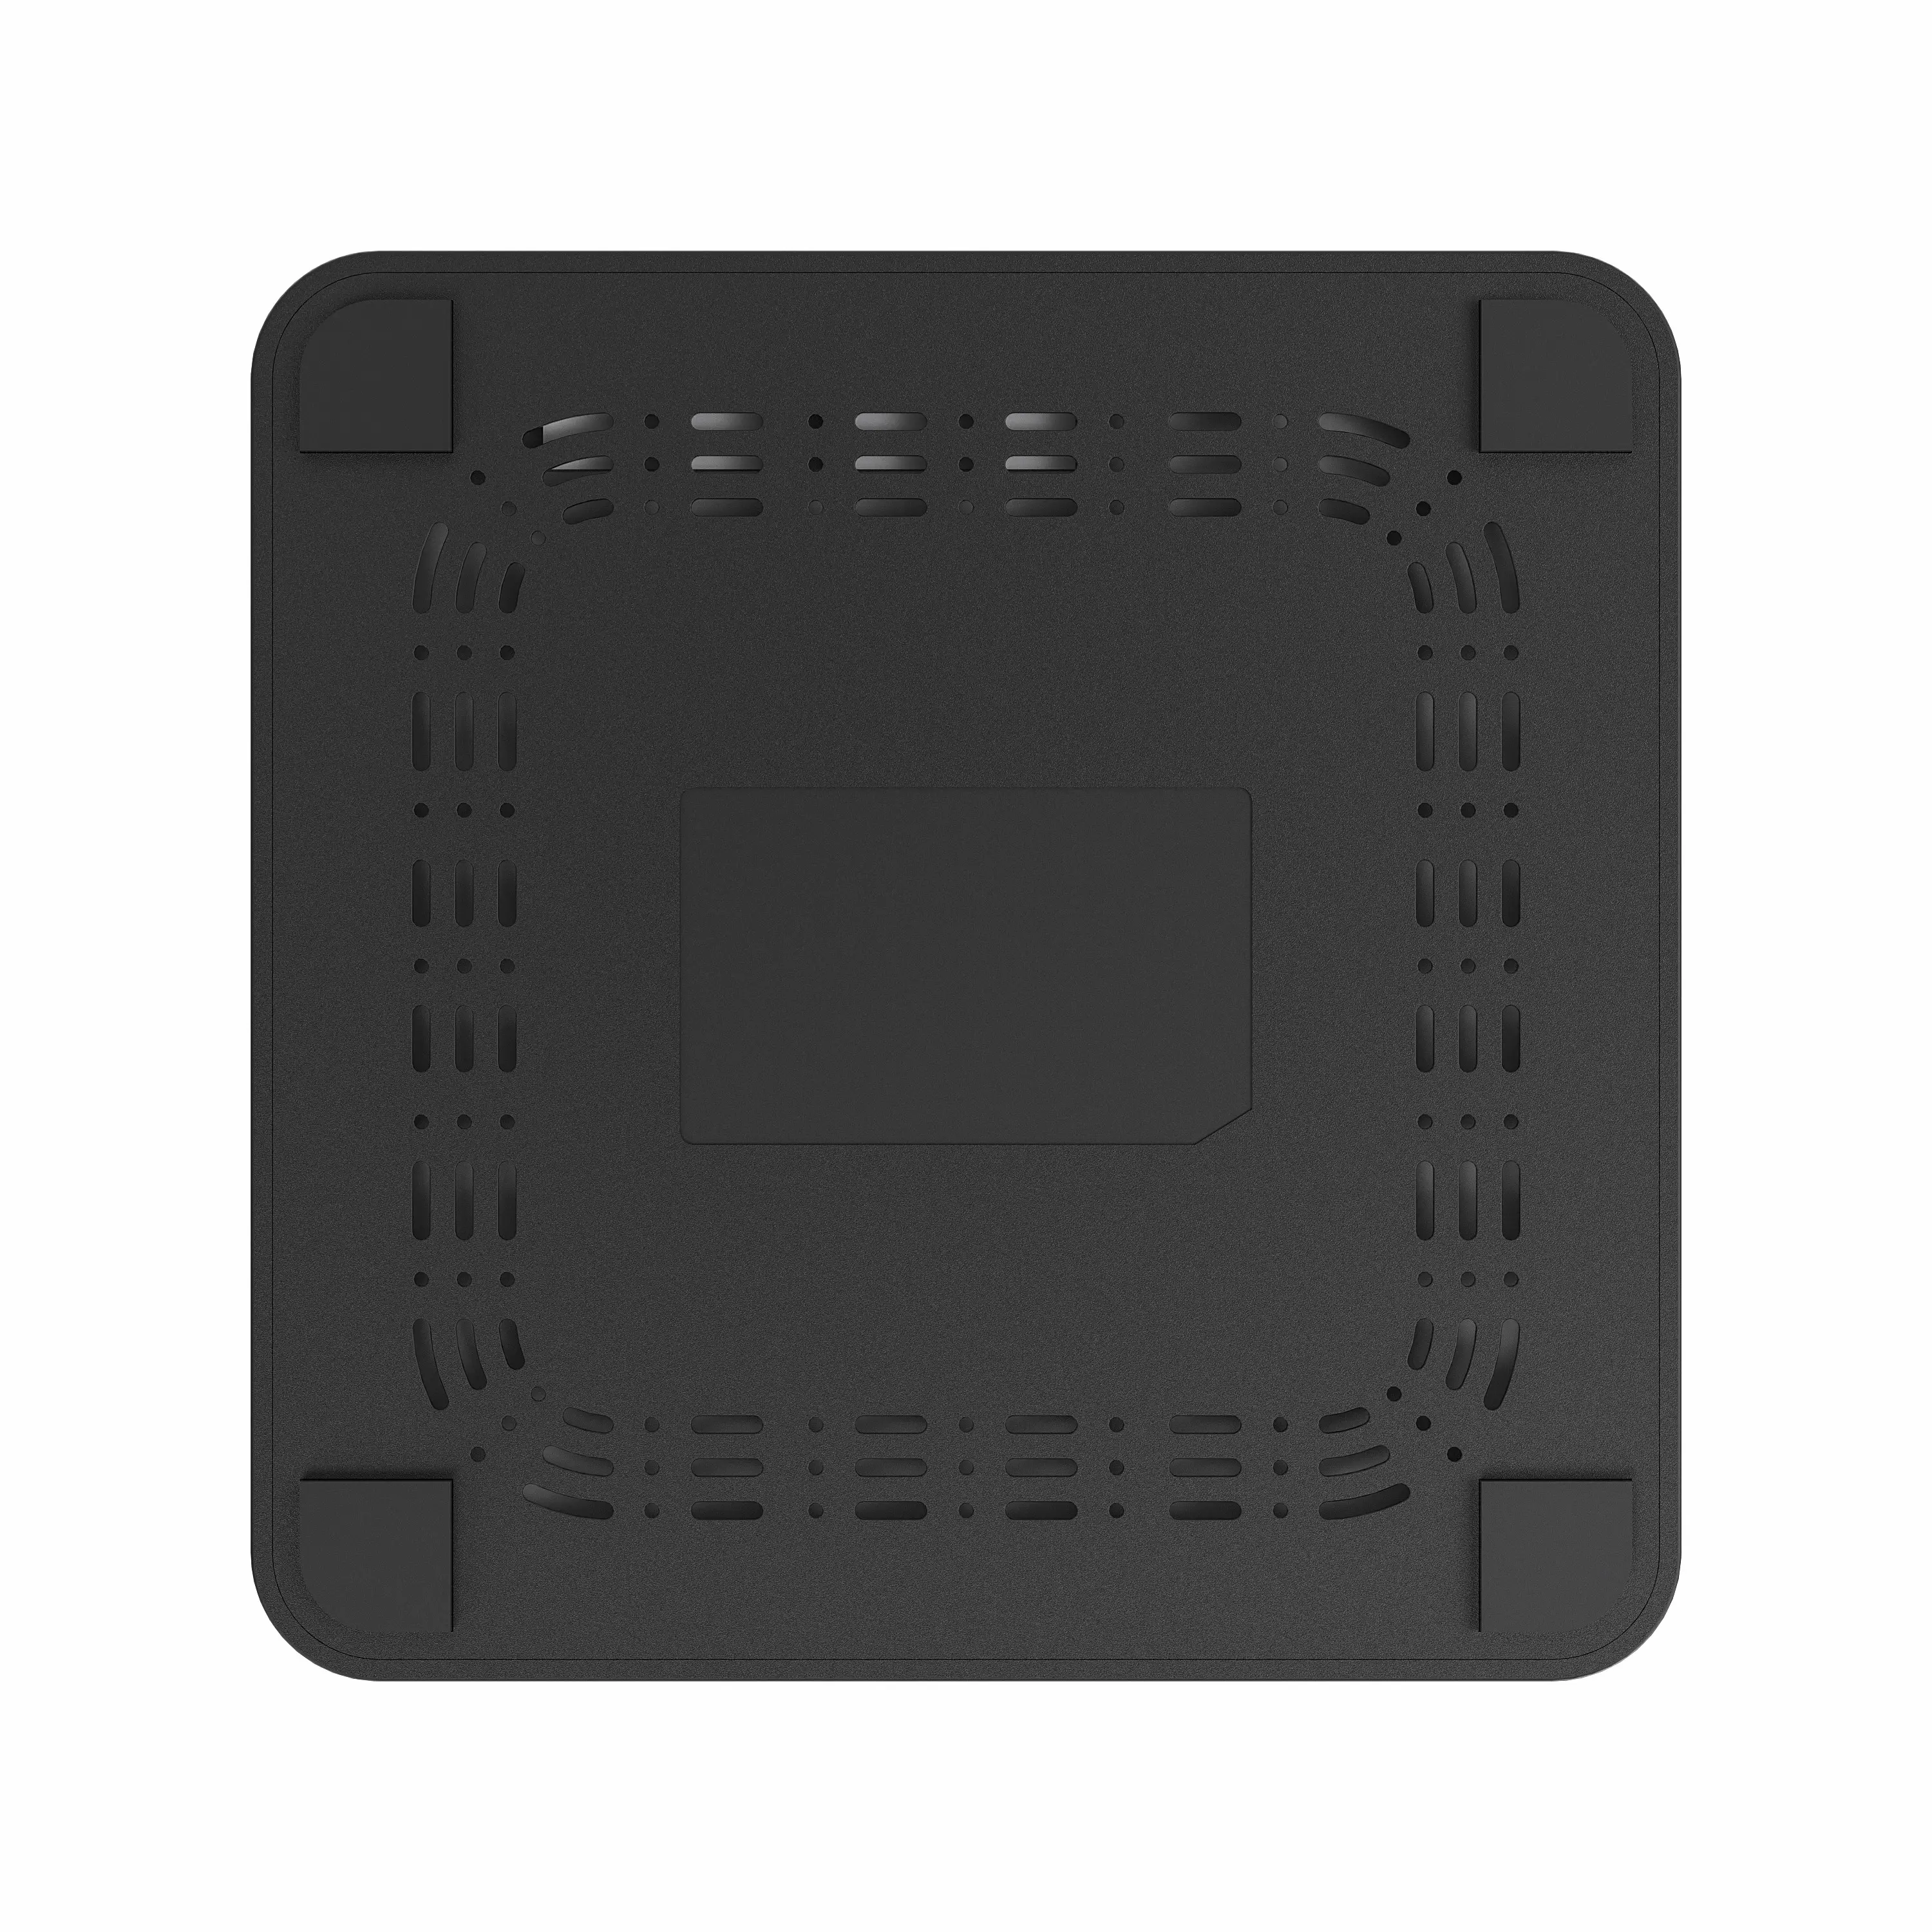 Mini routeur wifi domestique 3g/4g, GSM1800MHZ,GPS avec emplacement pour carte sim pour la maison, soho